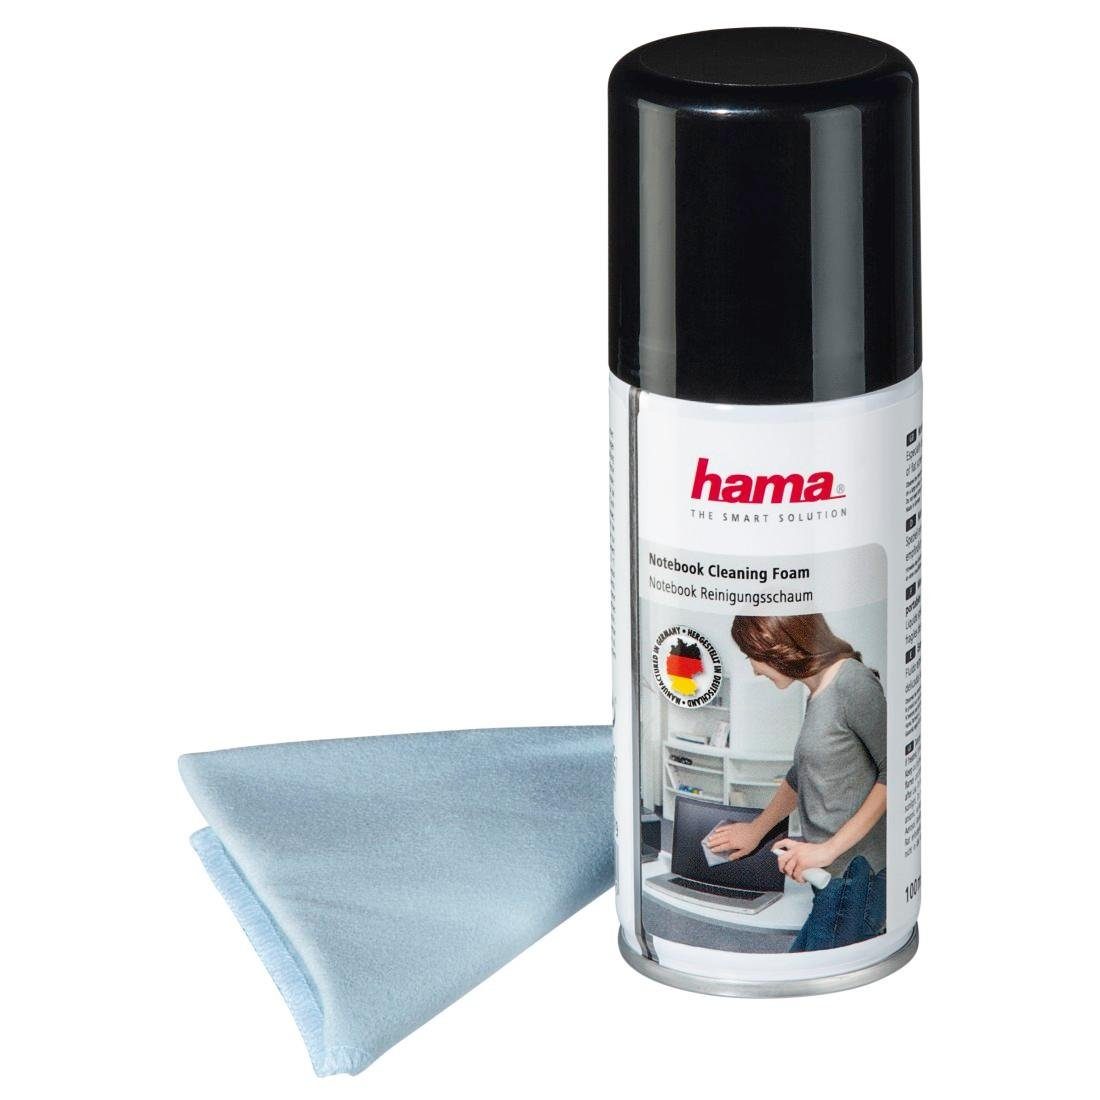 Hama Reinigungs-Set Notebook-Reinigungsschaum, 100 ml, Tuch inklusive